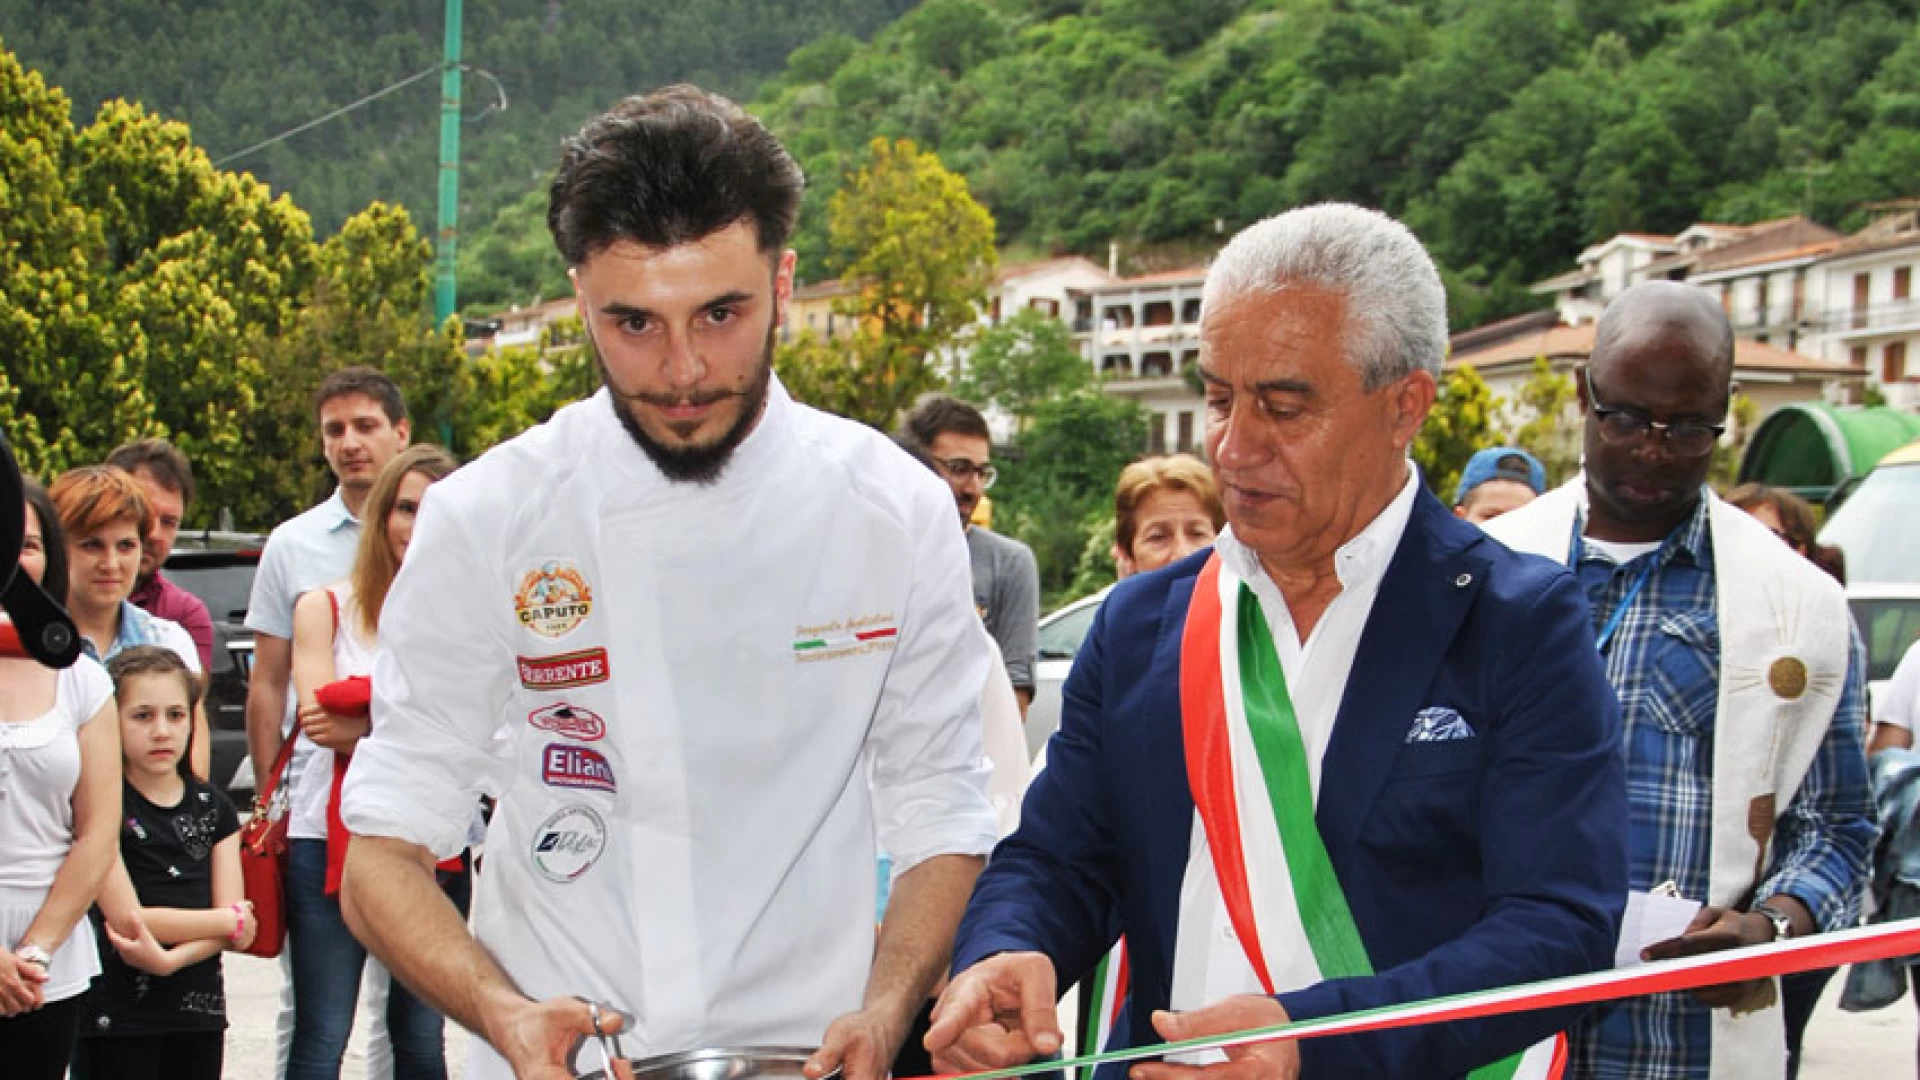 Monteroduni: giovani imprenditori crescono. Inaugurata la pizzeria “La Piazzetta”.